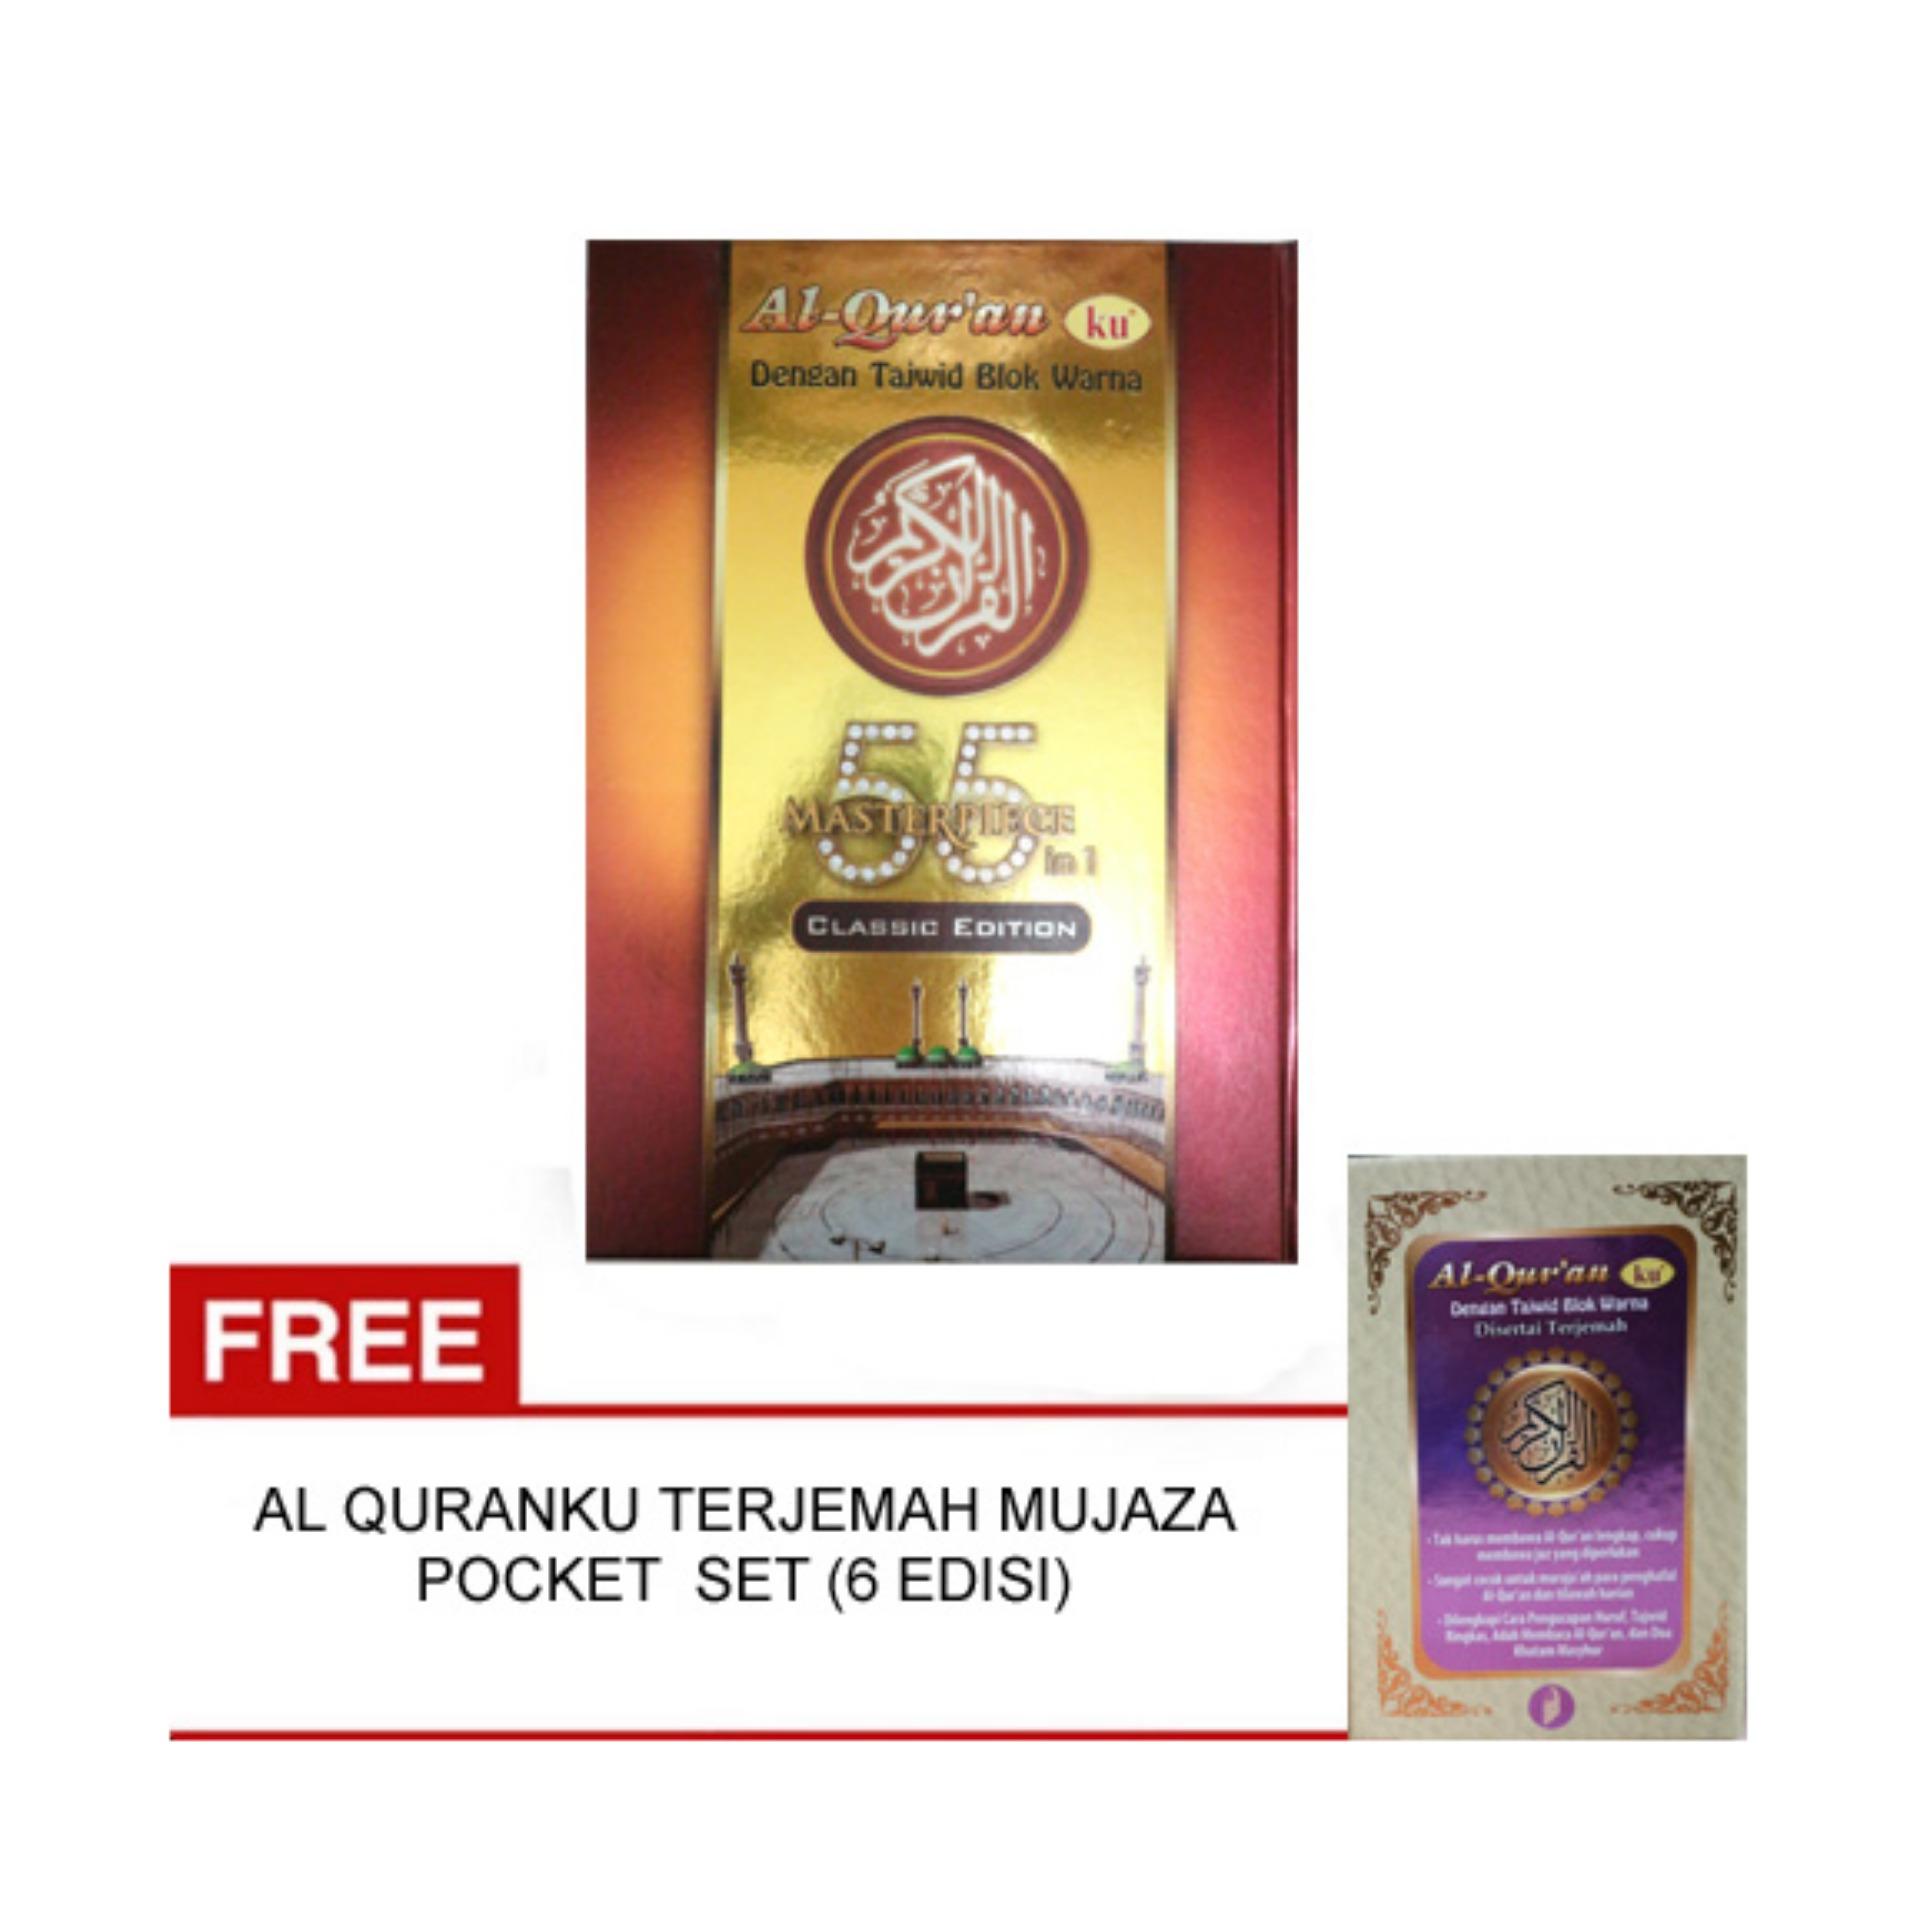 Al QuranKu Masterpiece 55 in 1 Classic Edition Free Al QuranKu Terjemah Mujaza Pocket